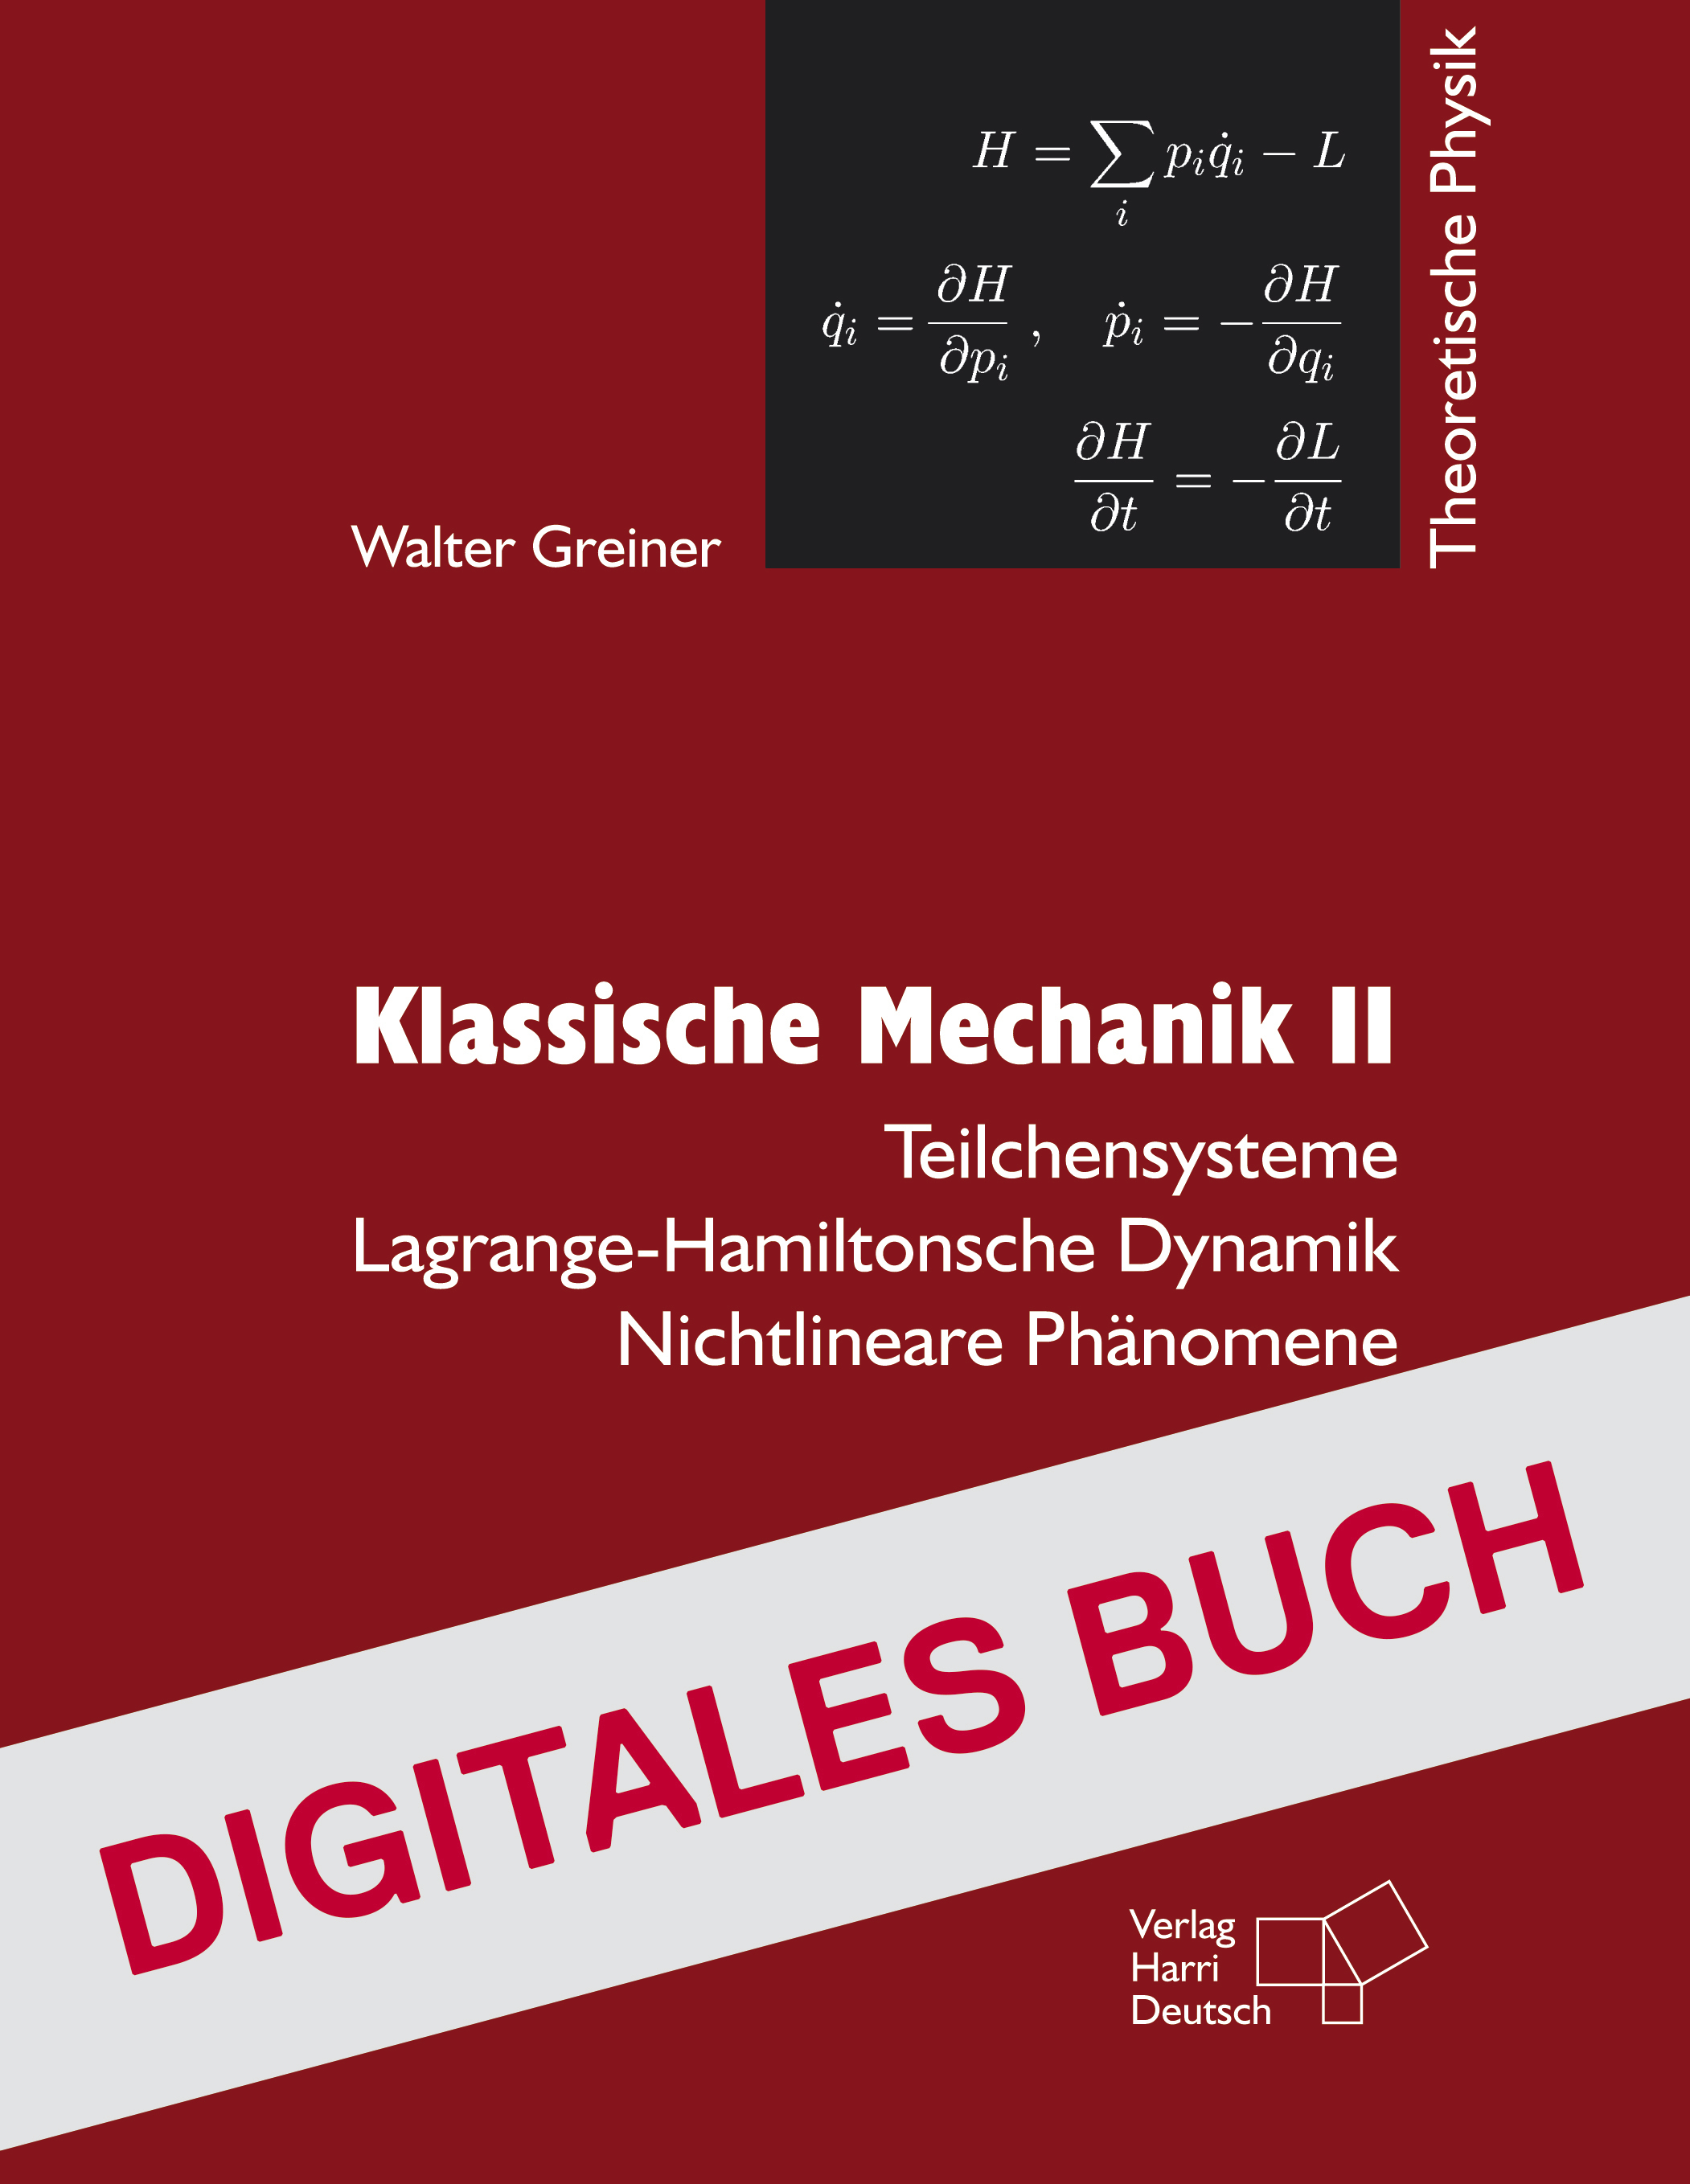 Klassische Mechanik II - Digitales Buch